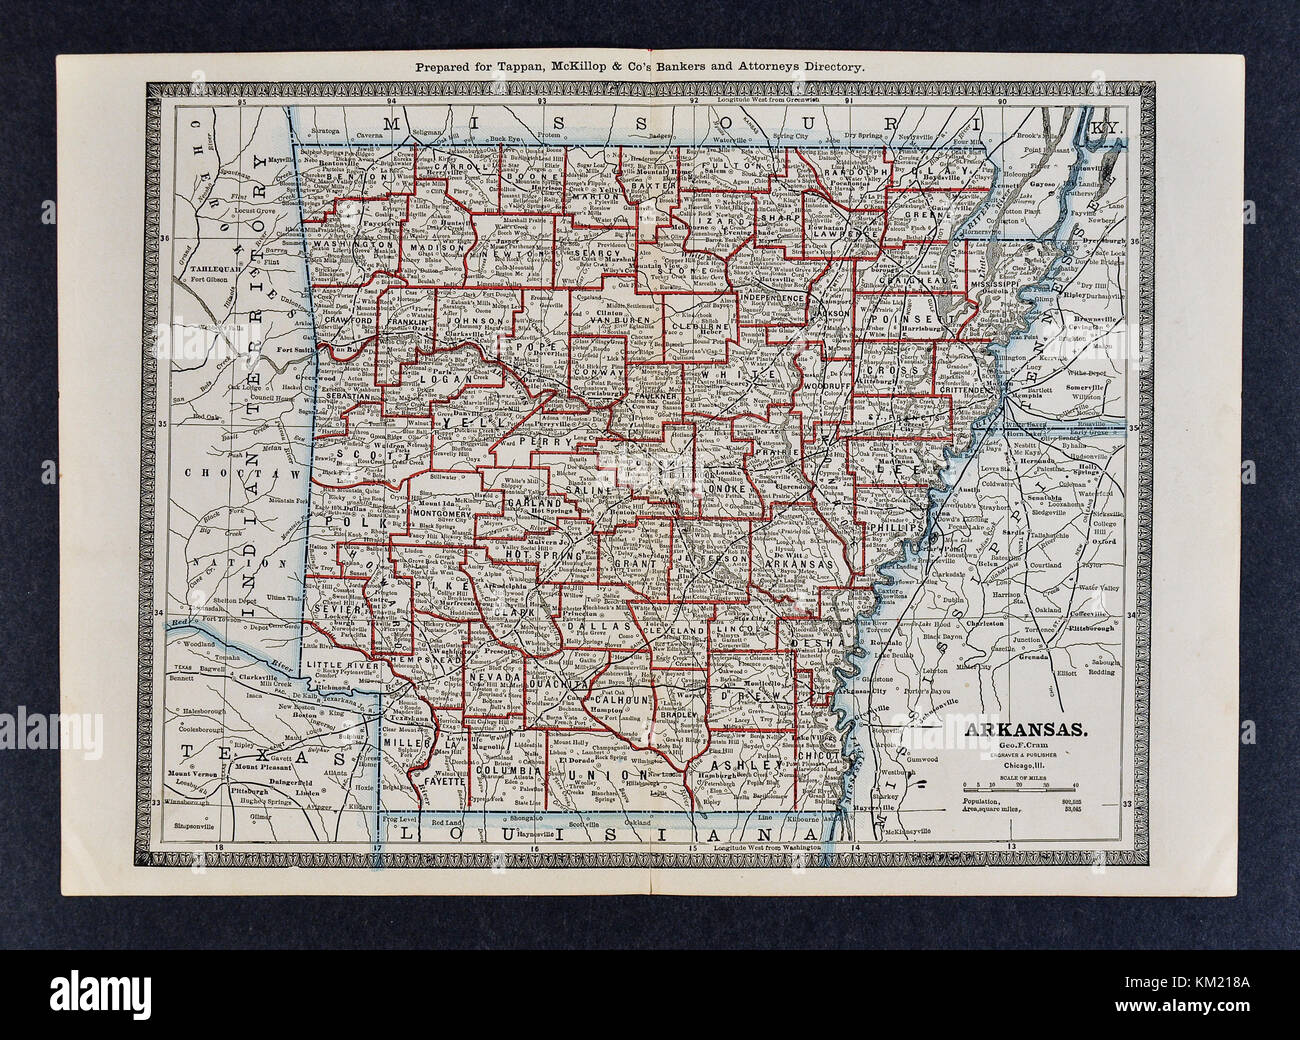 George Cram carte antique de 1866 atlas pour avocats et banquiers : États-Unis - l'Arkansas - little rock hot springs fayetteville jonesboro Banque D'Images